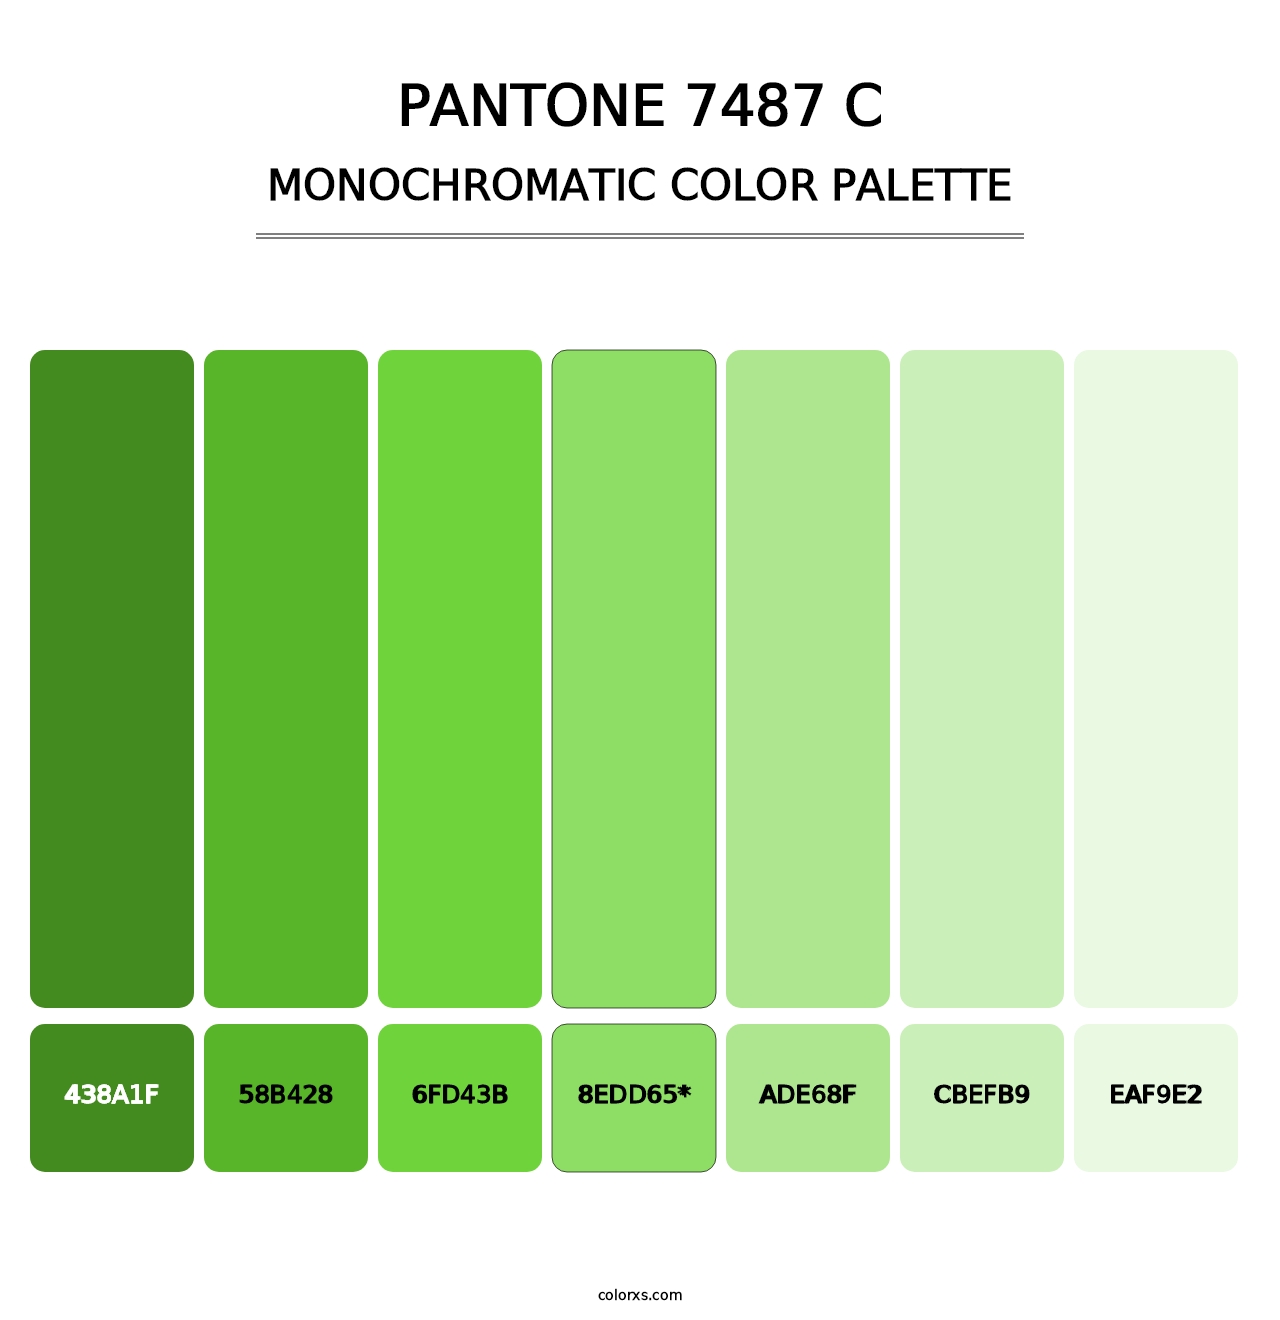 PANTONE 7487 C - Monochromatic Color Palette